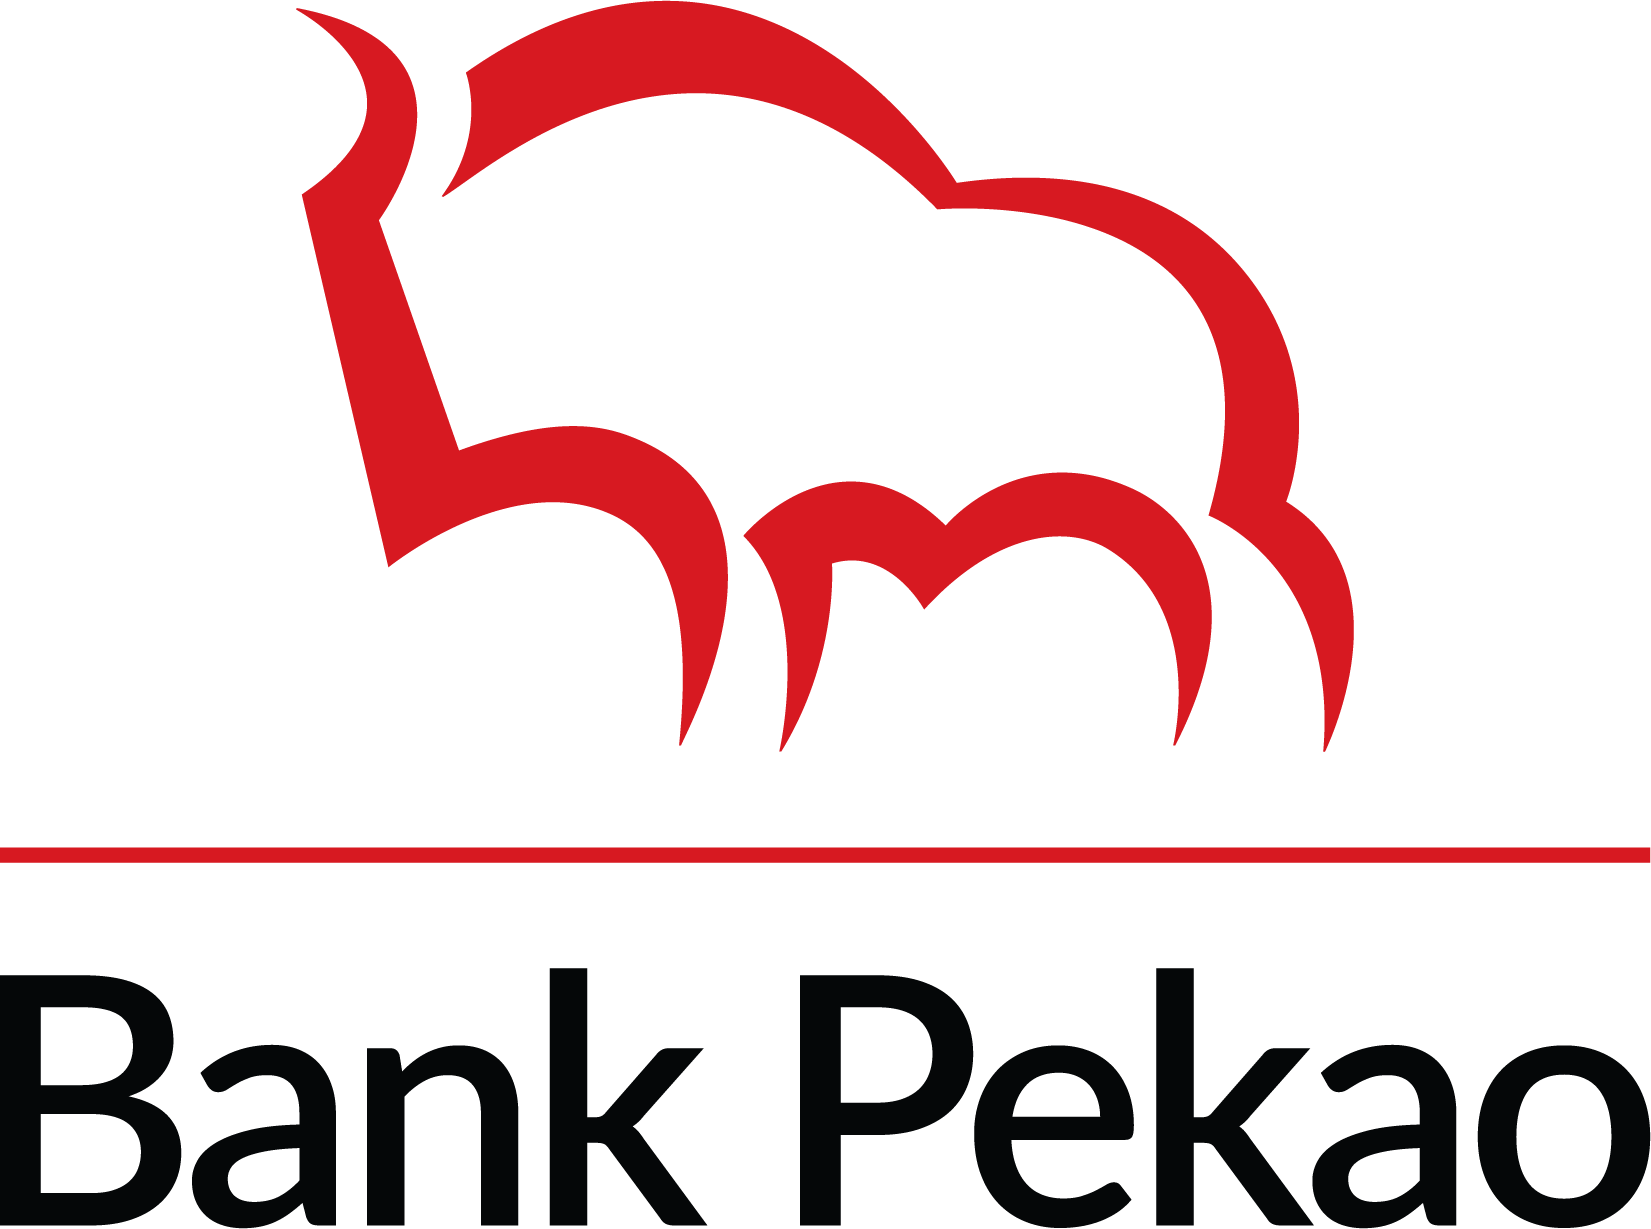 Logo banku Pekao w układzie pionowym